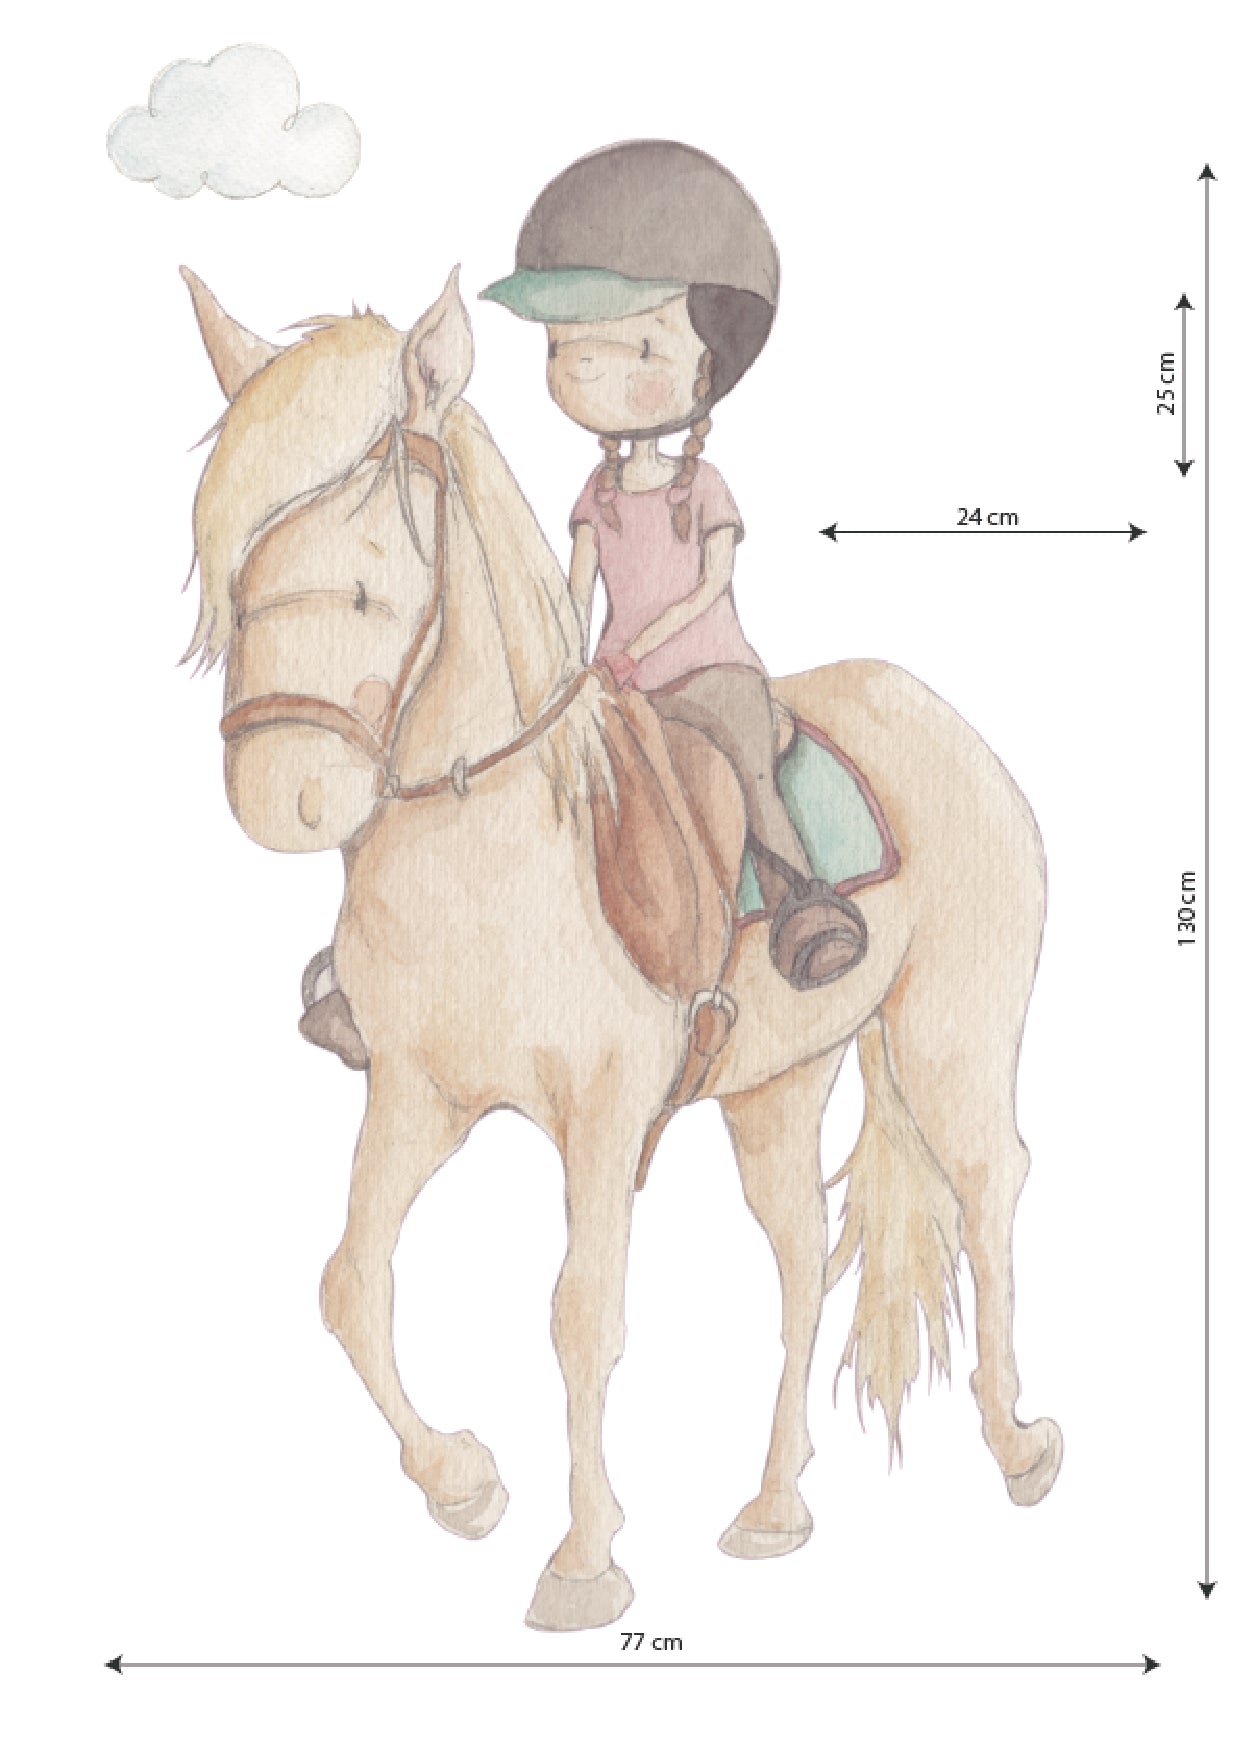 Vinilo Decorativo Infantil HORSE RIDING